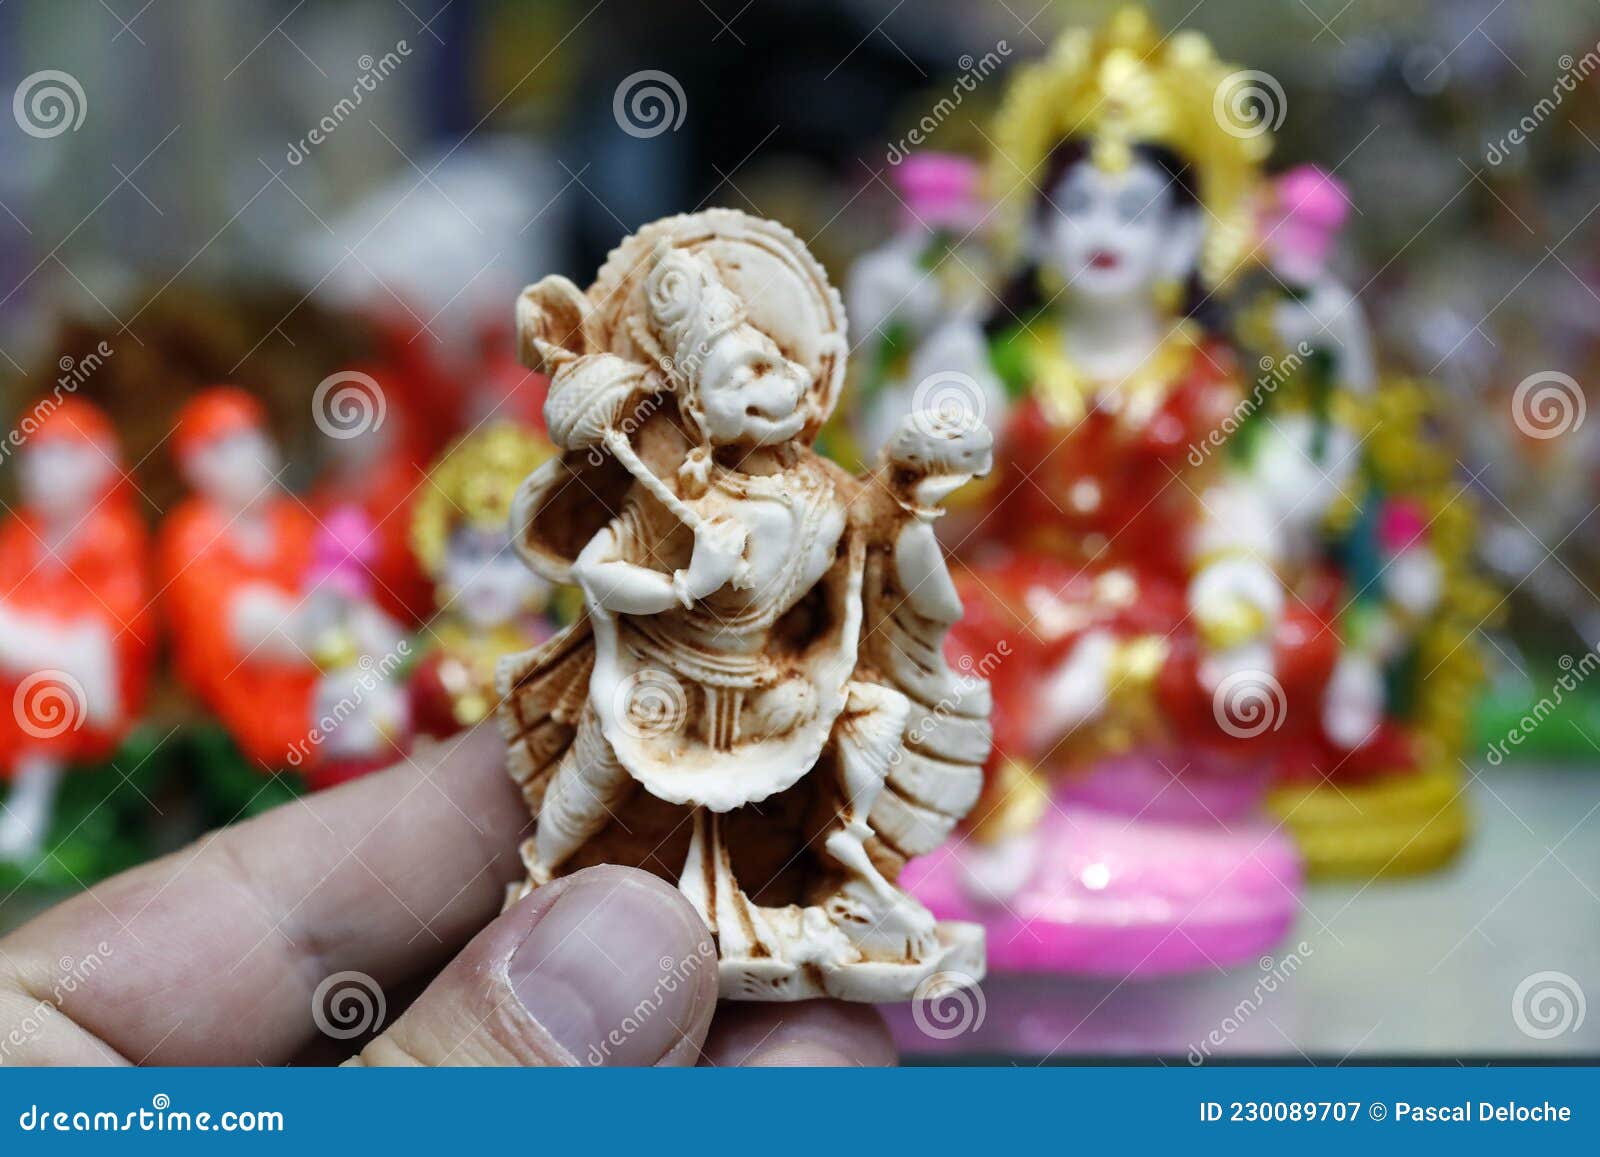 atoom ondergoed passen Religie En Spiritualiteit. Hindoeïsme Redactionele Fotografie - Image of  arabier, standbeelden: 230089707